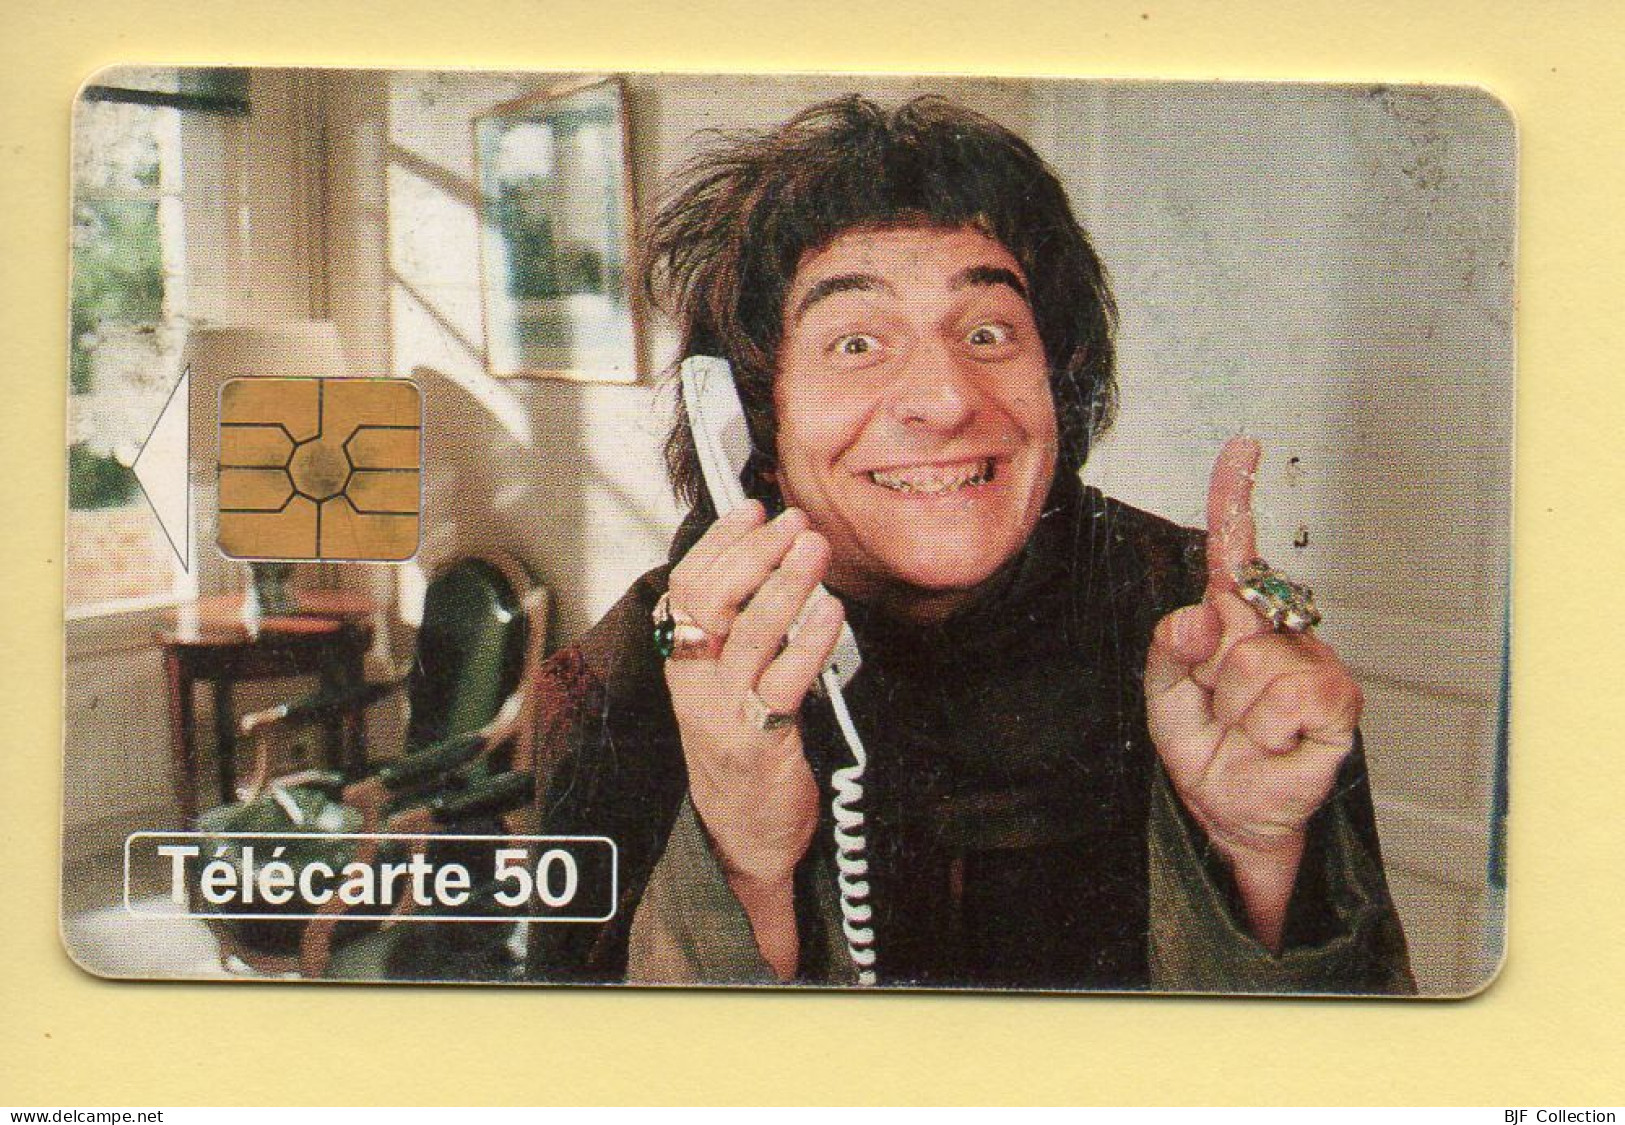 Télécarte 1998 : Christian Clavier / 50 Unités (voir Puce Et Numéro Au Dos) - Cinéma